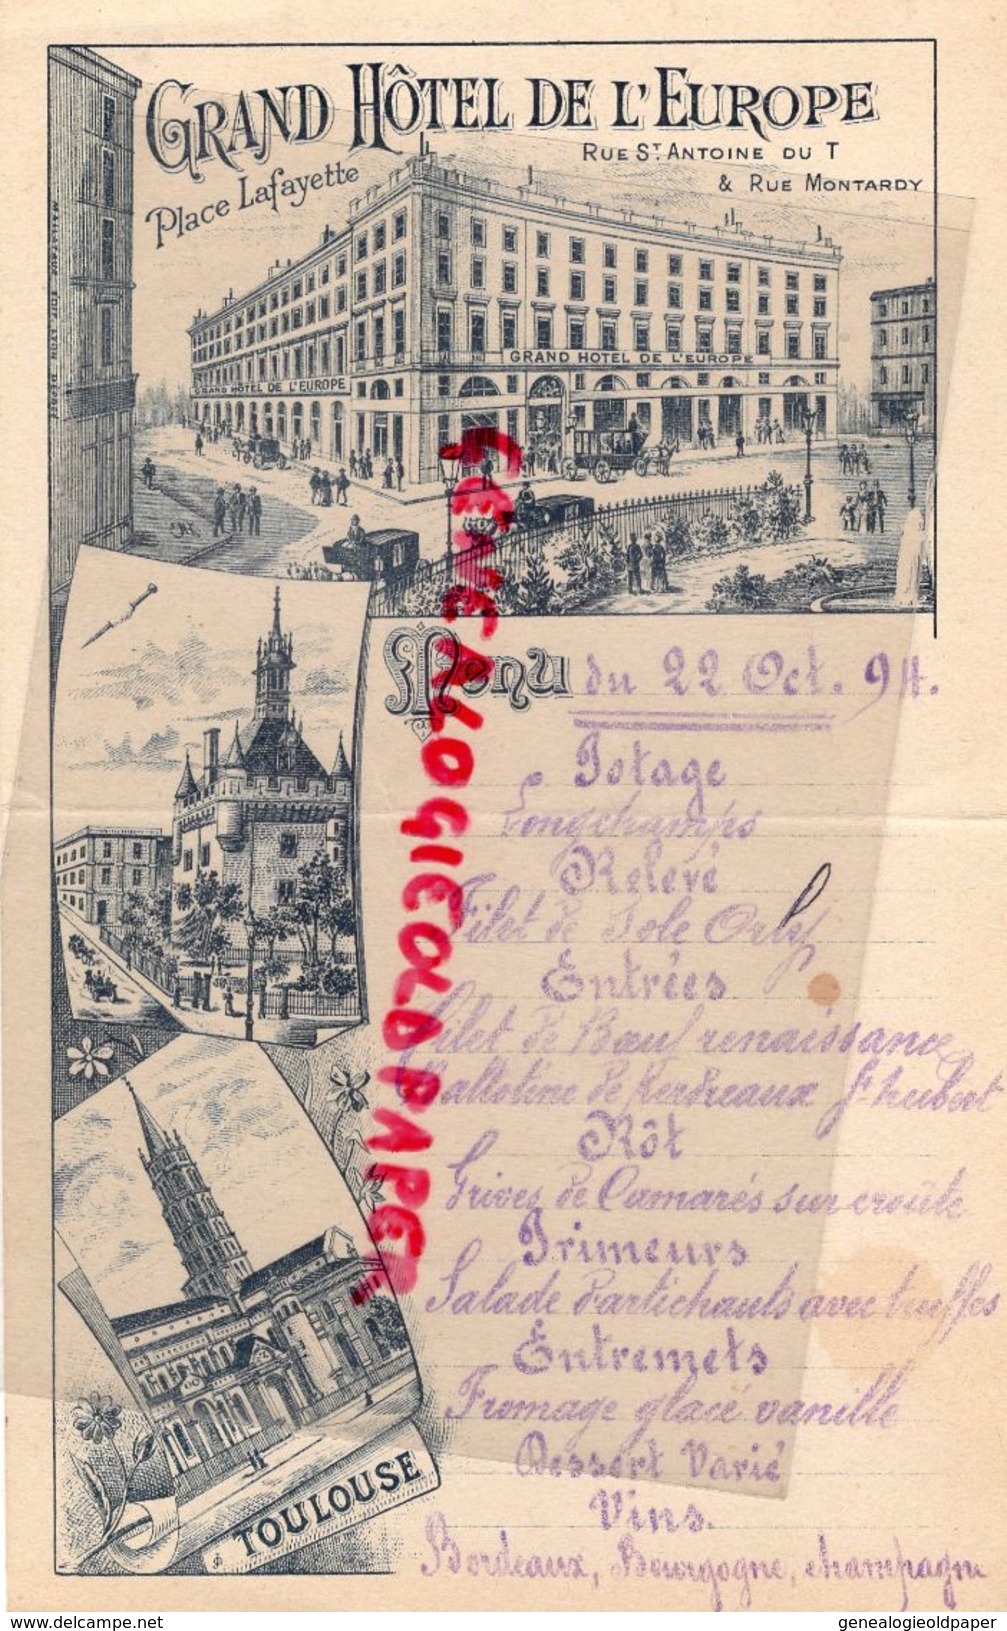 31- TOULOUSE- RARE MENU GRAND HOTEL DE L' EUROPE-PLACE LAFAYETTE-RUE ST ANTOINE-RUE MONTARDY-22 OCTOBRE 1894 SNCF - Menus